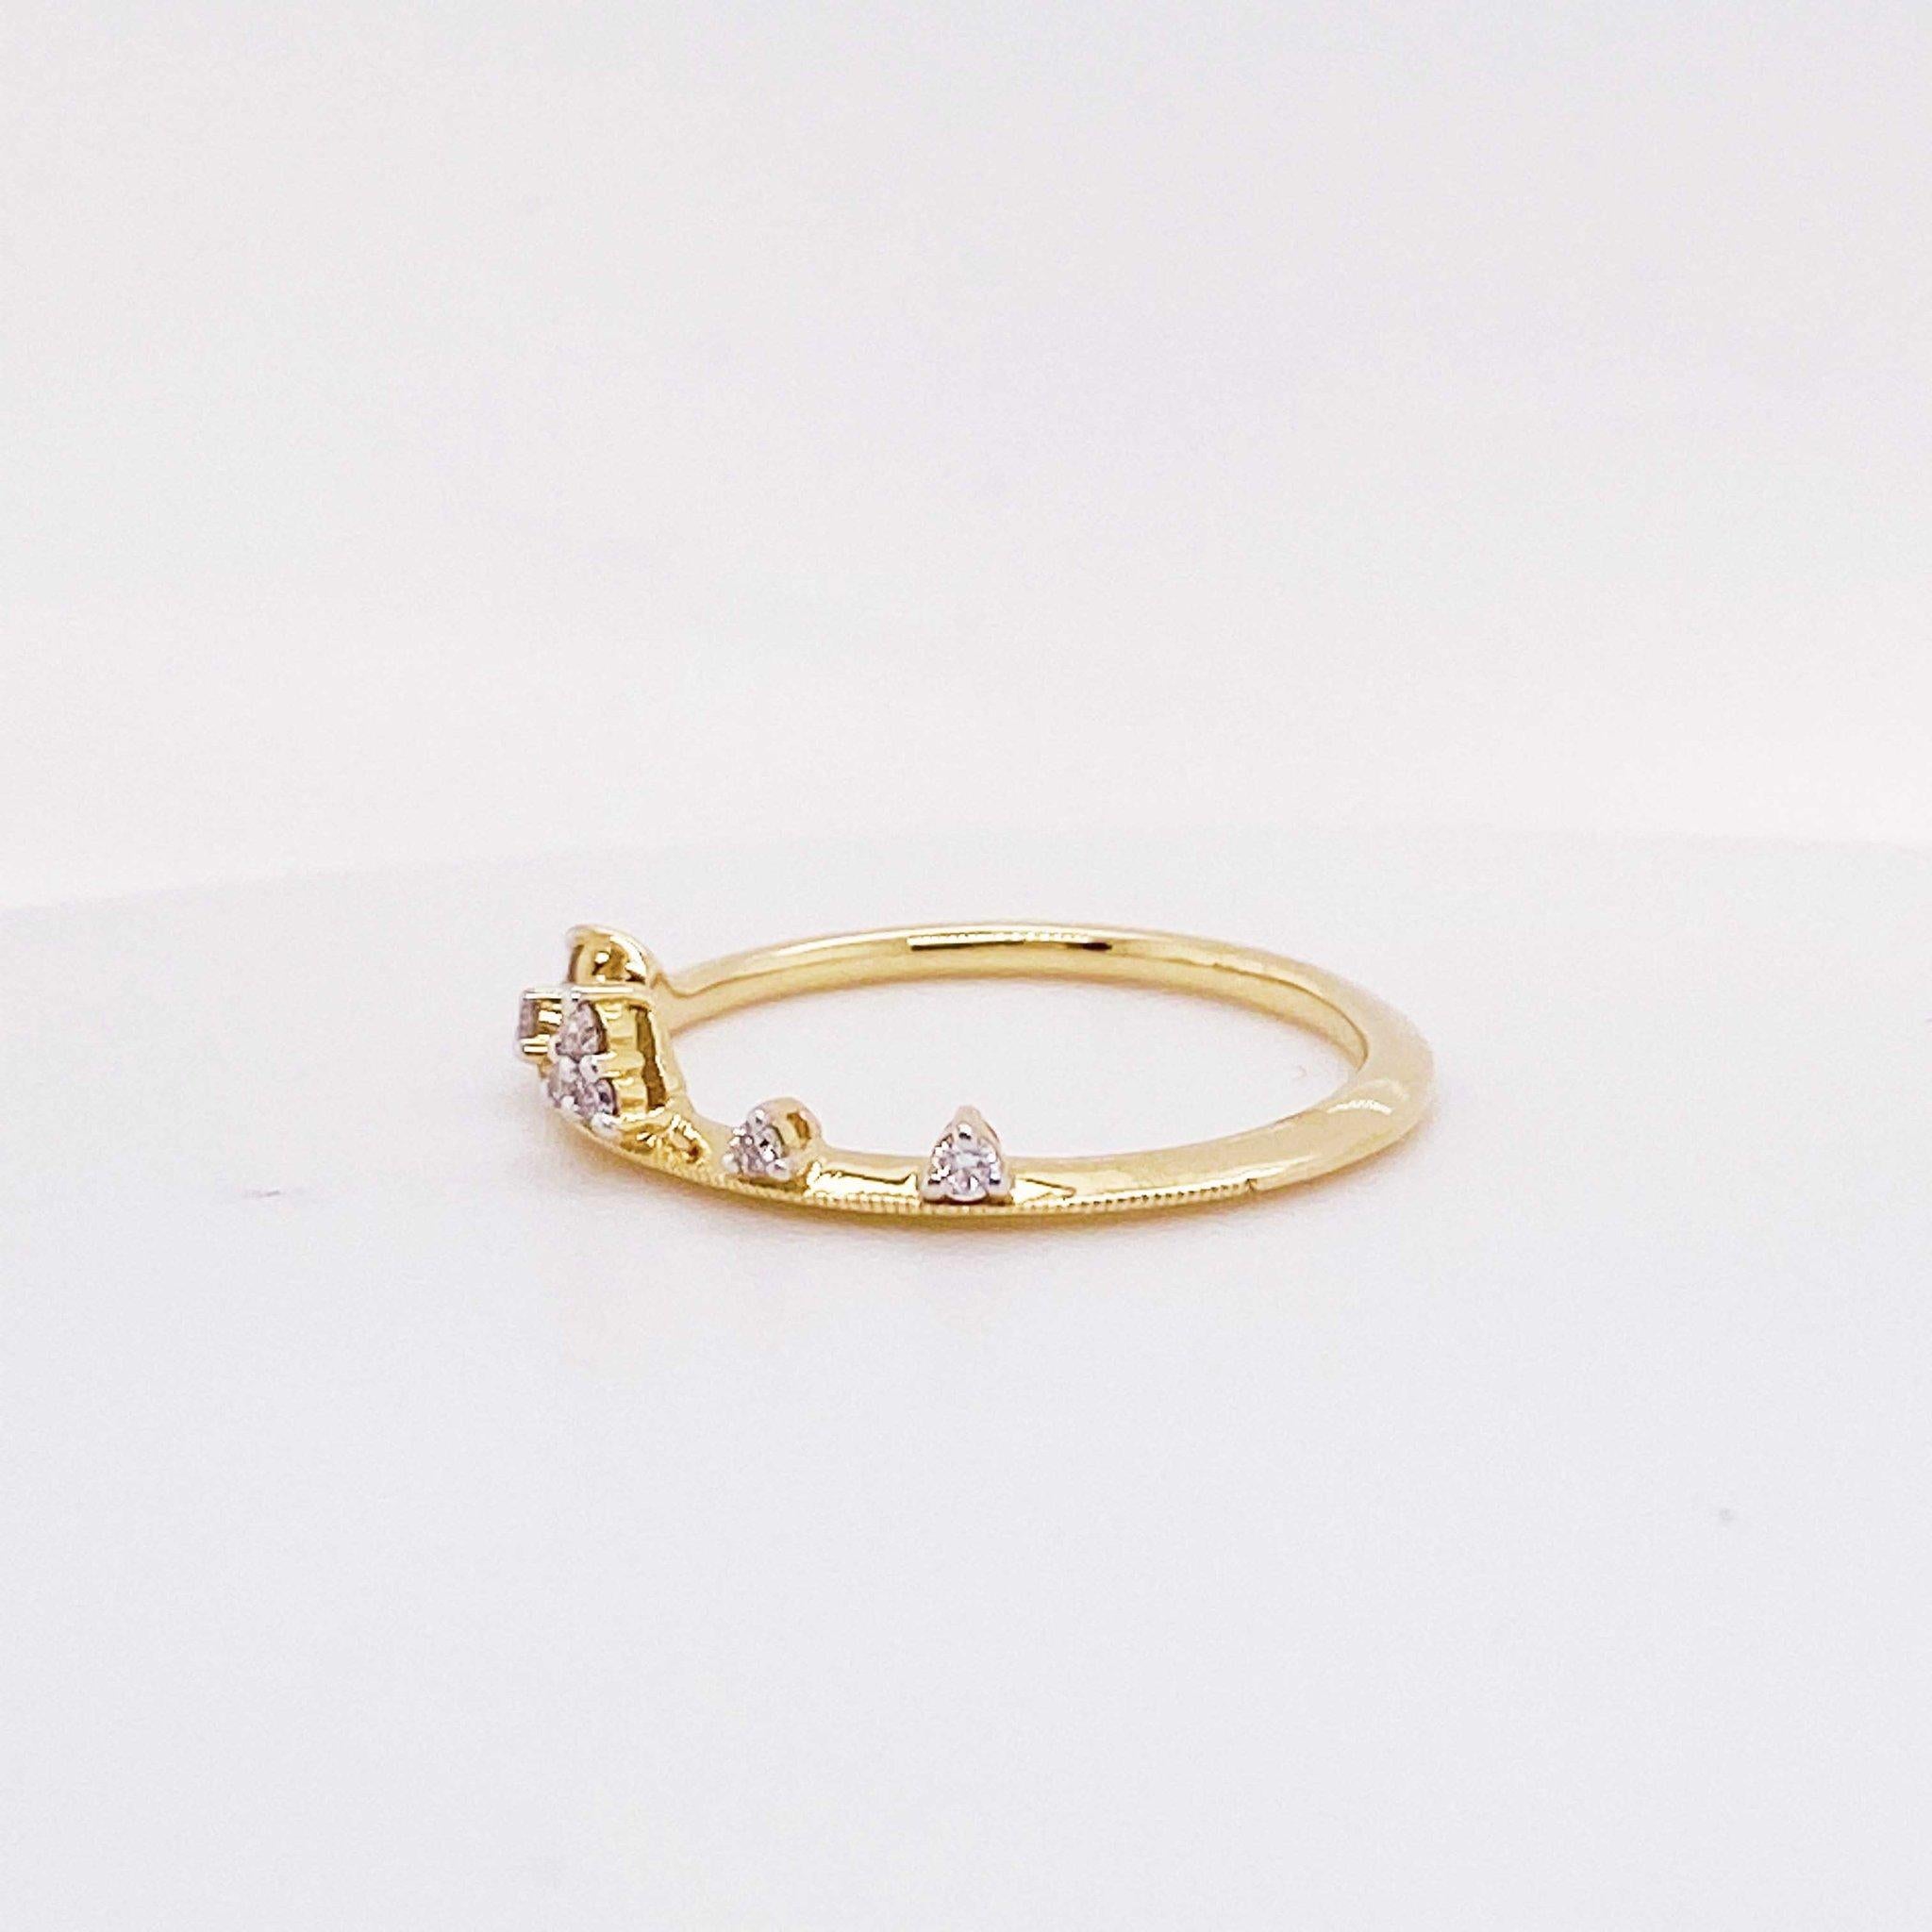 Magnifique bague diadème en diamant ! Ce magnifique bracelet en diamants est digne d'une reine ! Avec des diamants ronds et brillants sertis dans un diadème en or 14k. Cette bague diadème en diamants peut être portée seule comme une pièce unique ou